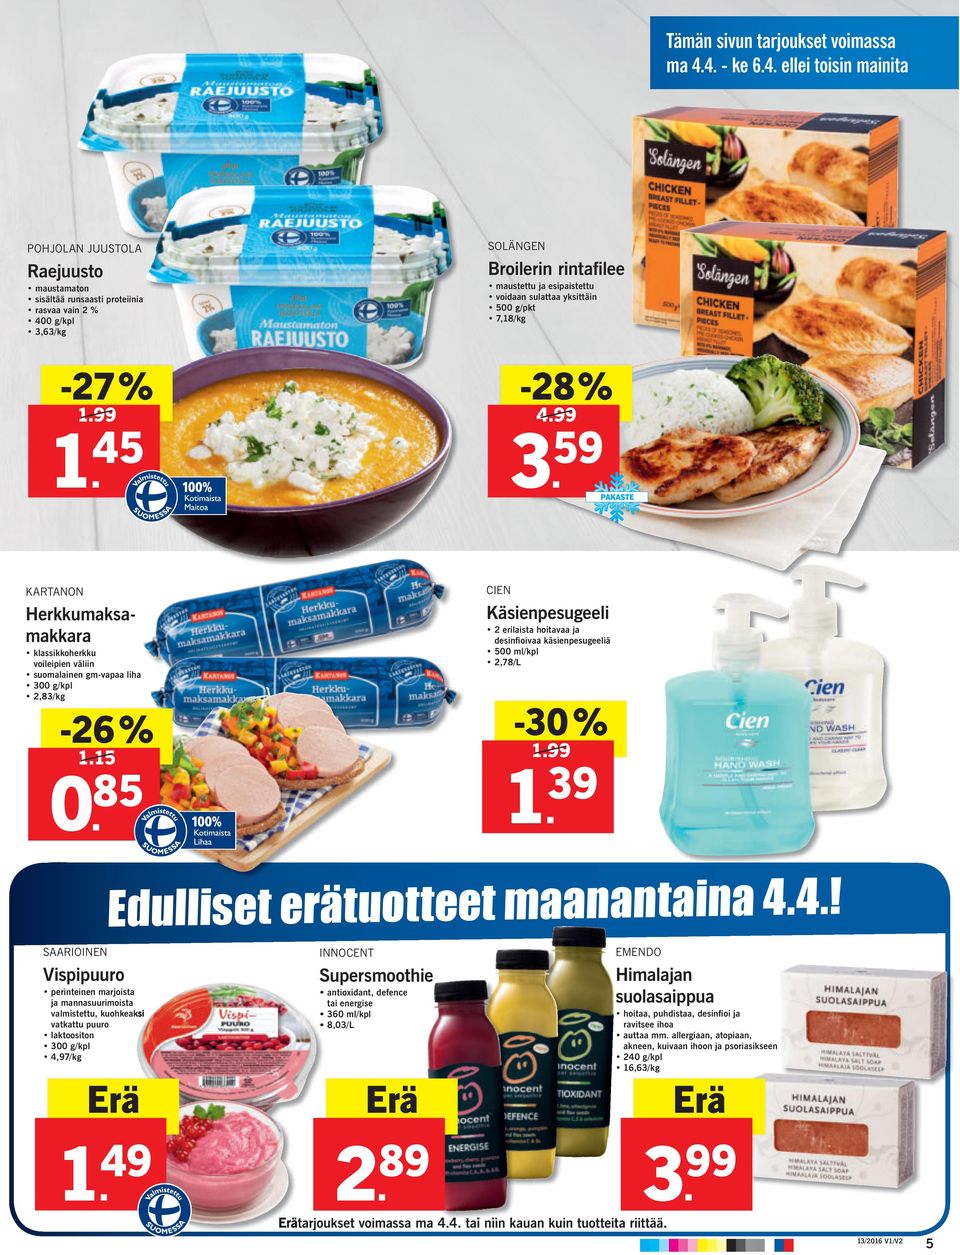 59 KARTANON Herkkumaksamakkara klassikkoherkku voileipien väliin suomalainen gm-vapaa liha 300 g/kpl 2,83/kg -26% 1.15 0.